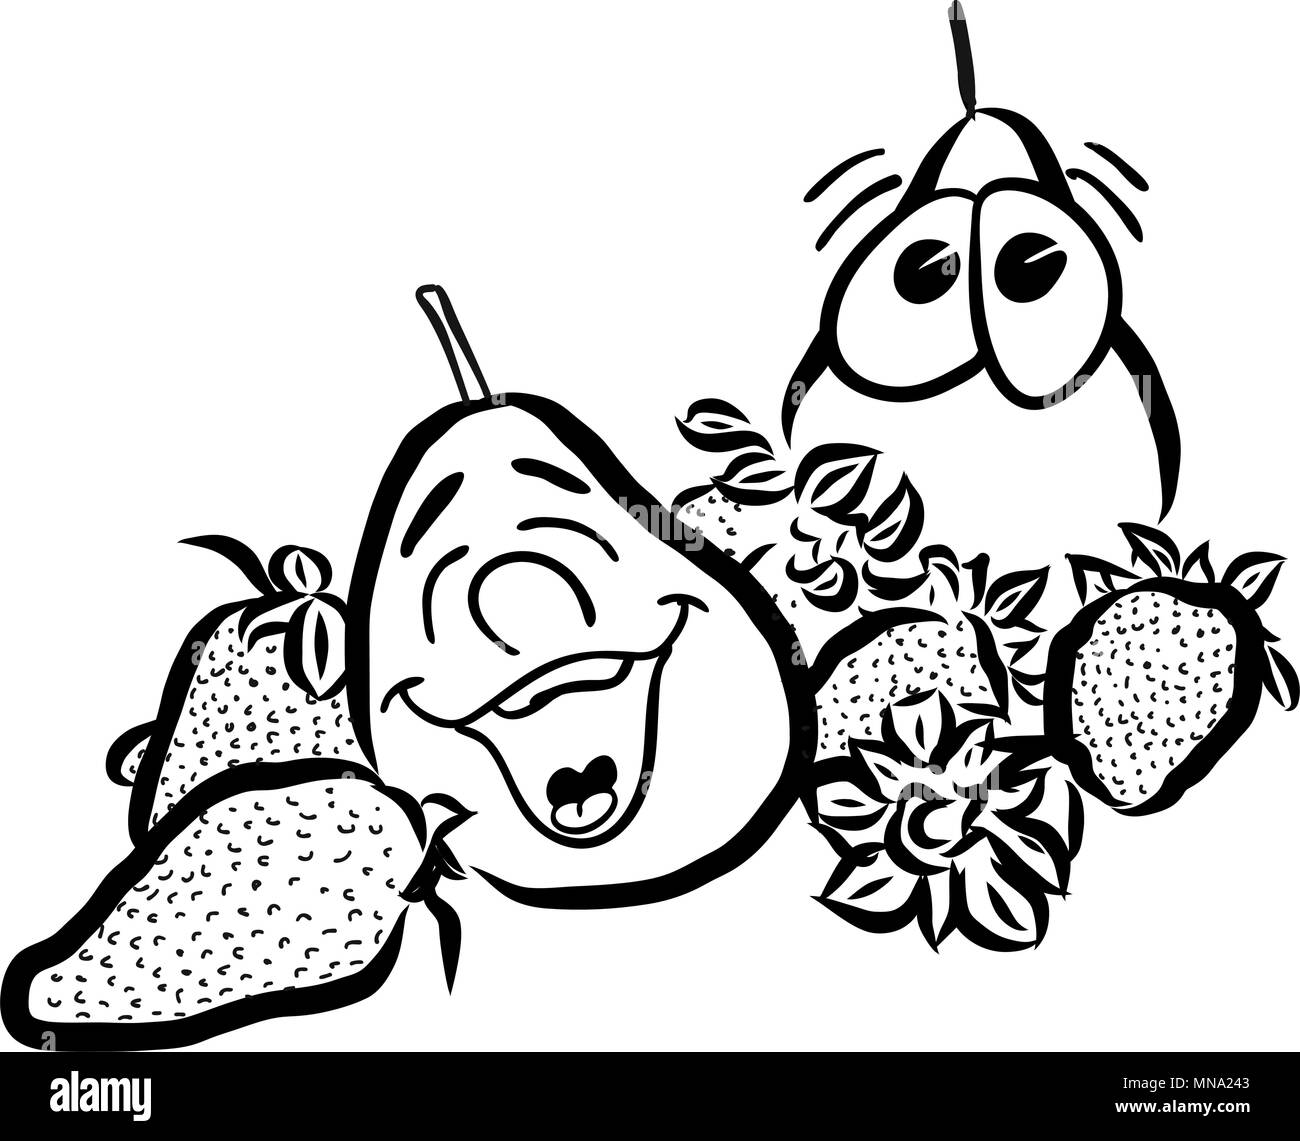 Ridendo di pere e frutti di fragola, disegnati a mano vettore schizzi di contorno. Utile per qualsiasi tipo di pubblicità nella stampa e web. Illustrazione Vettoriale